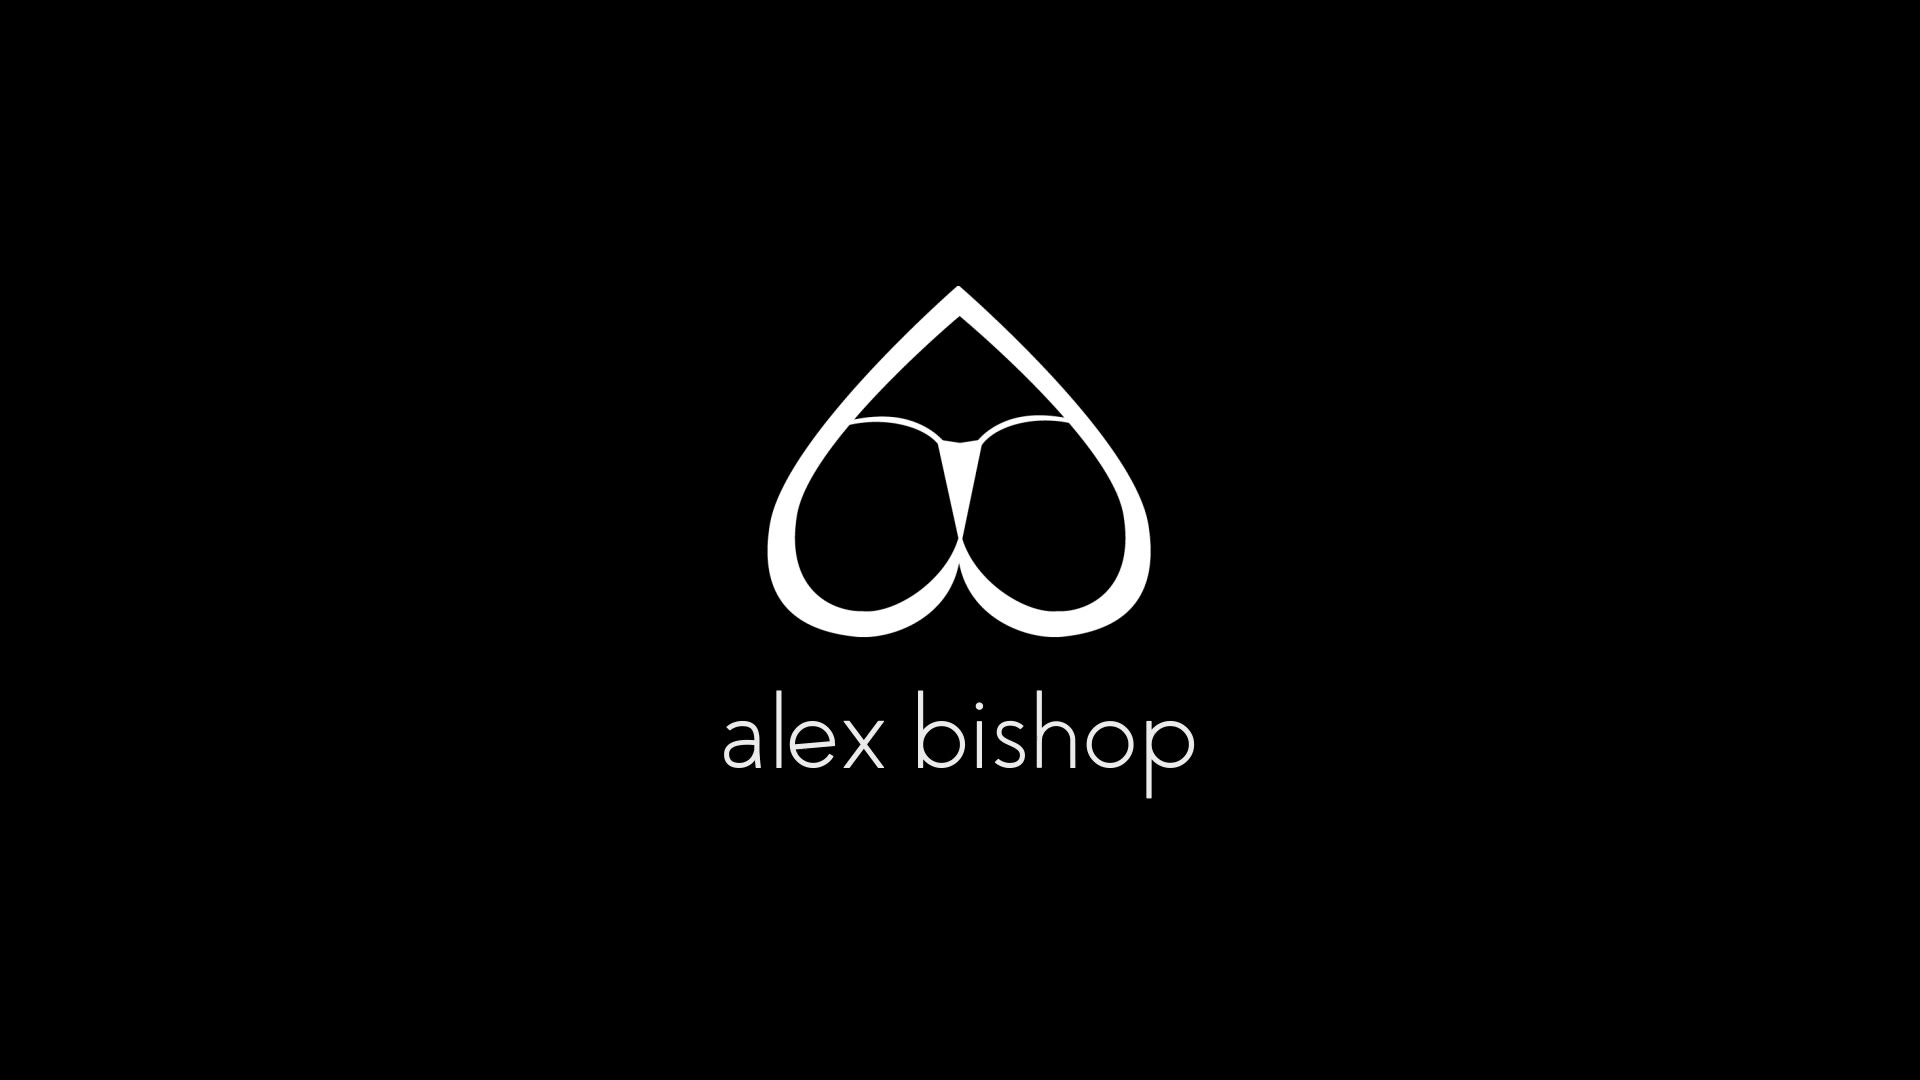 Alex bishop snapchat